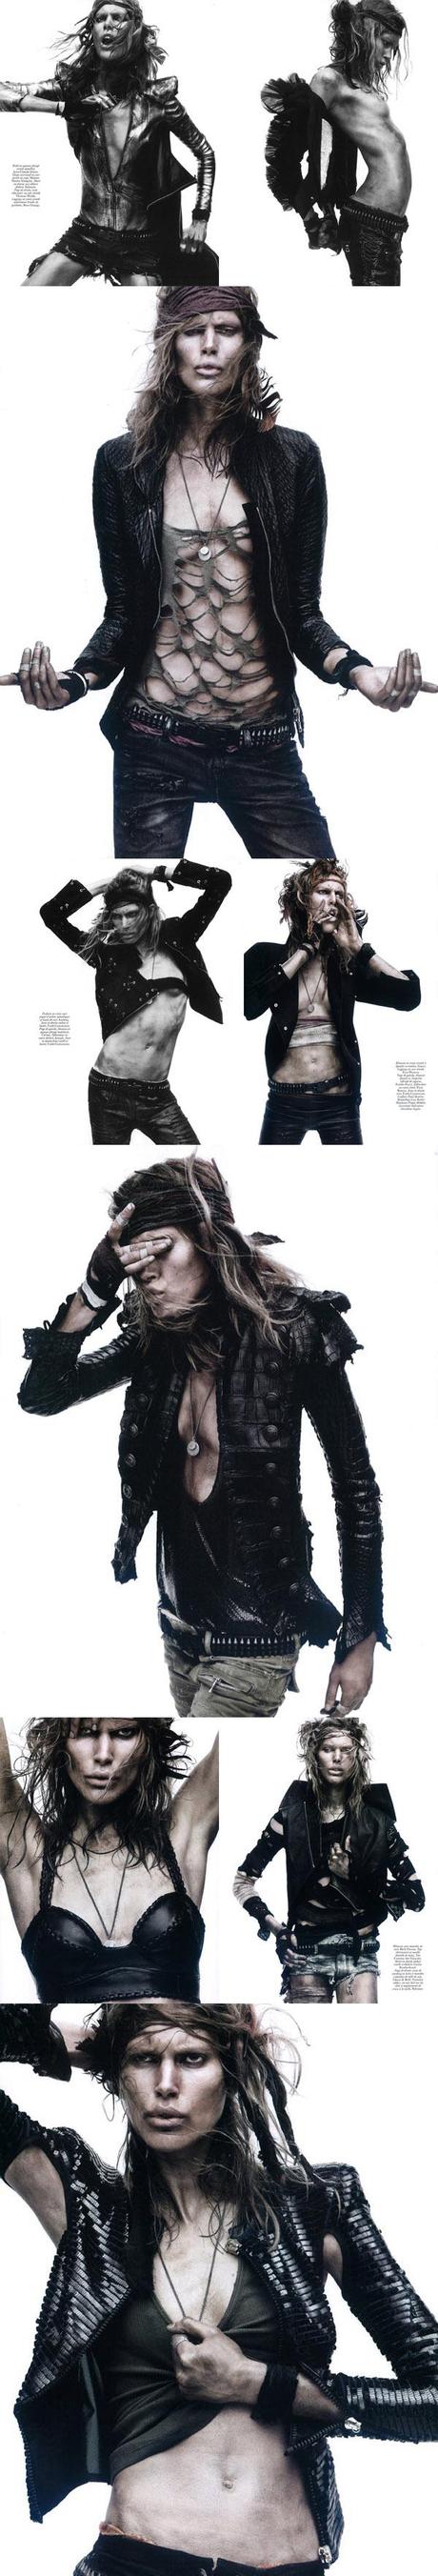 Vogue | Mars 2010 | Commando